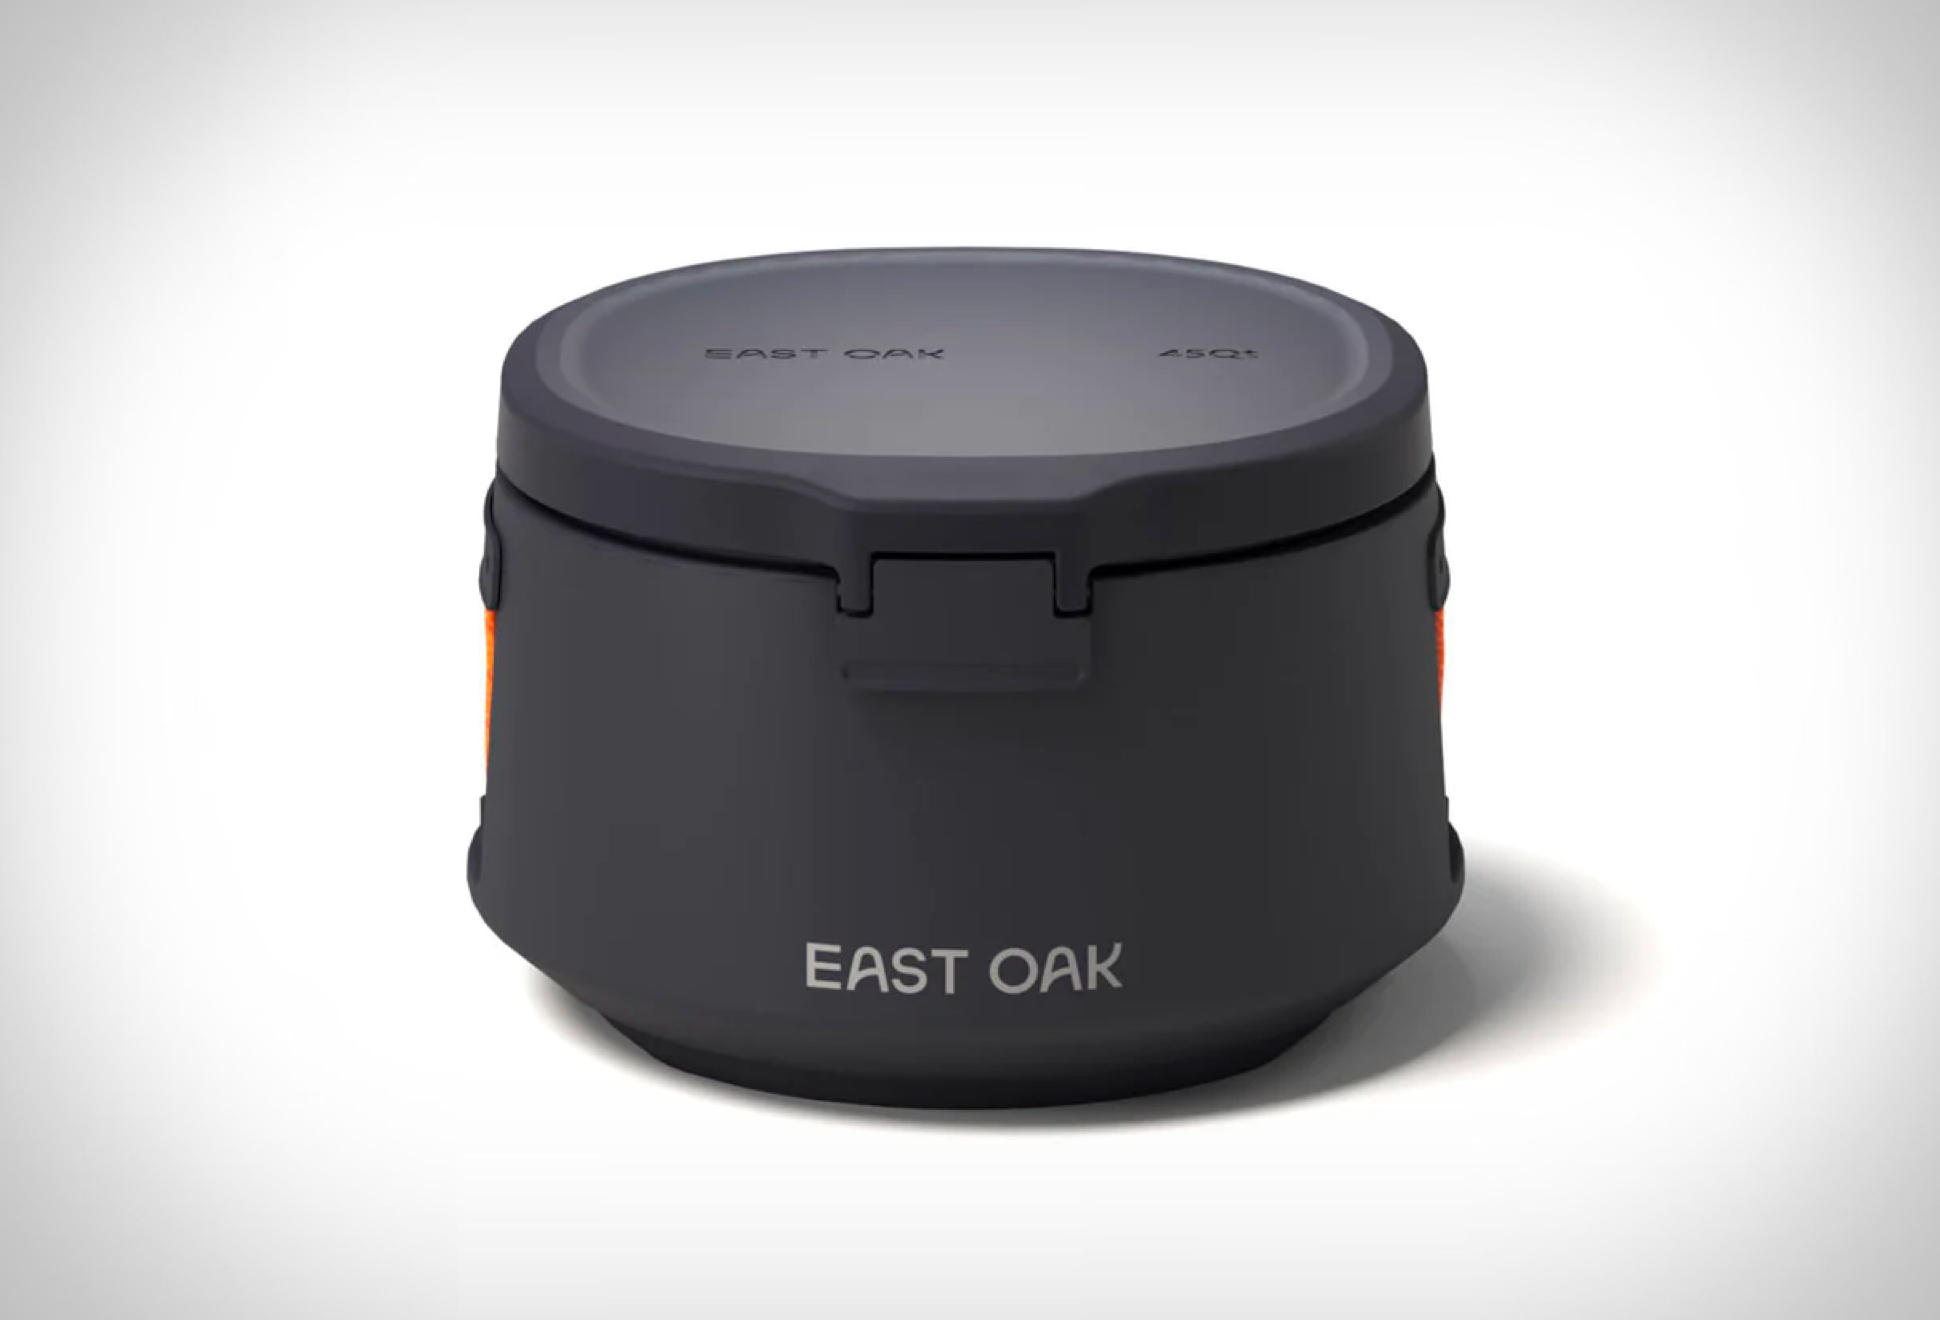 East Oak Hard Cooler - Image